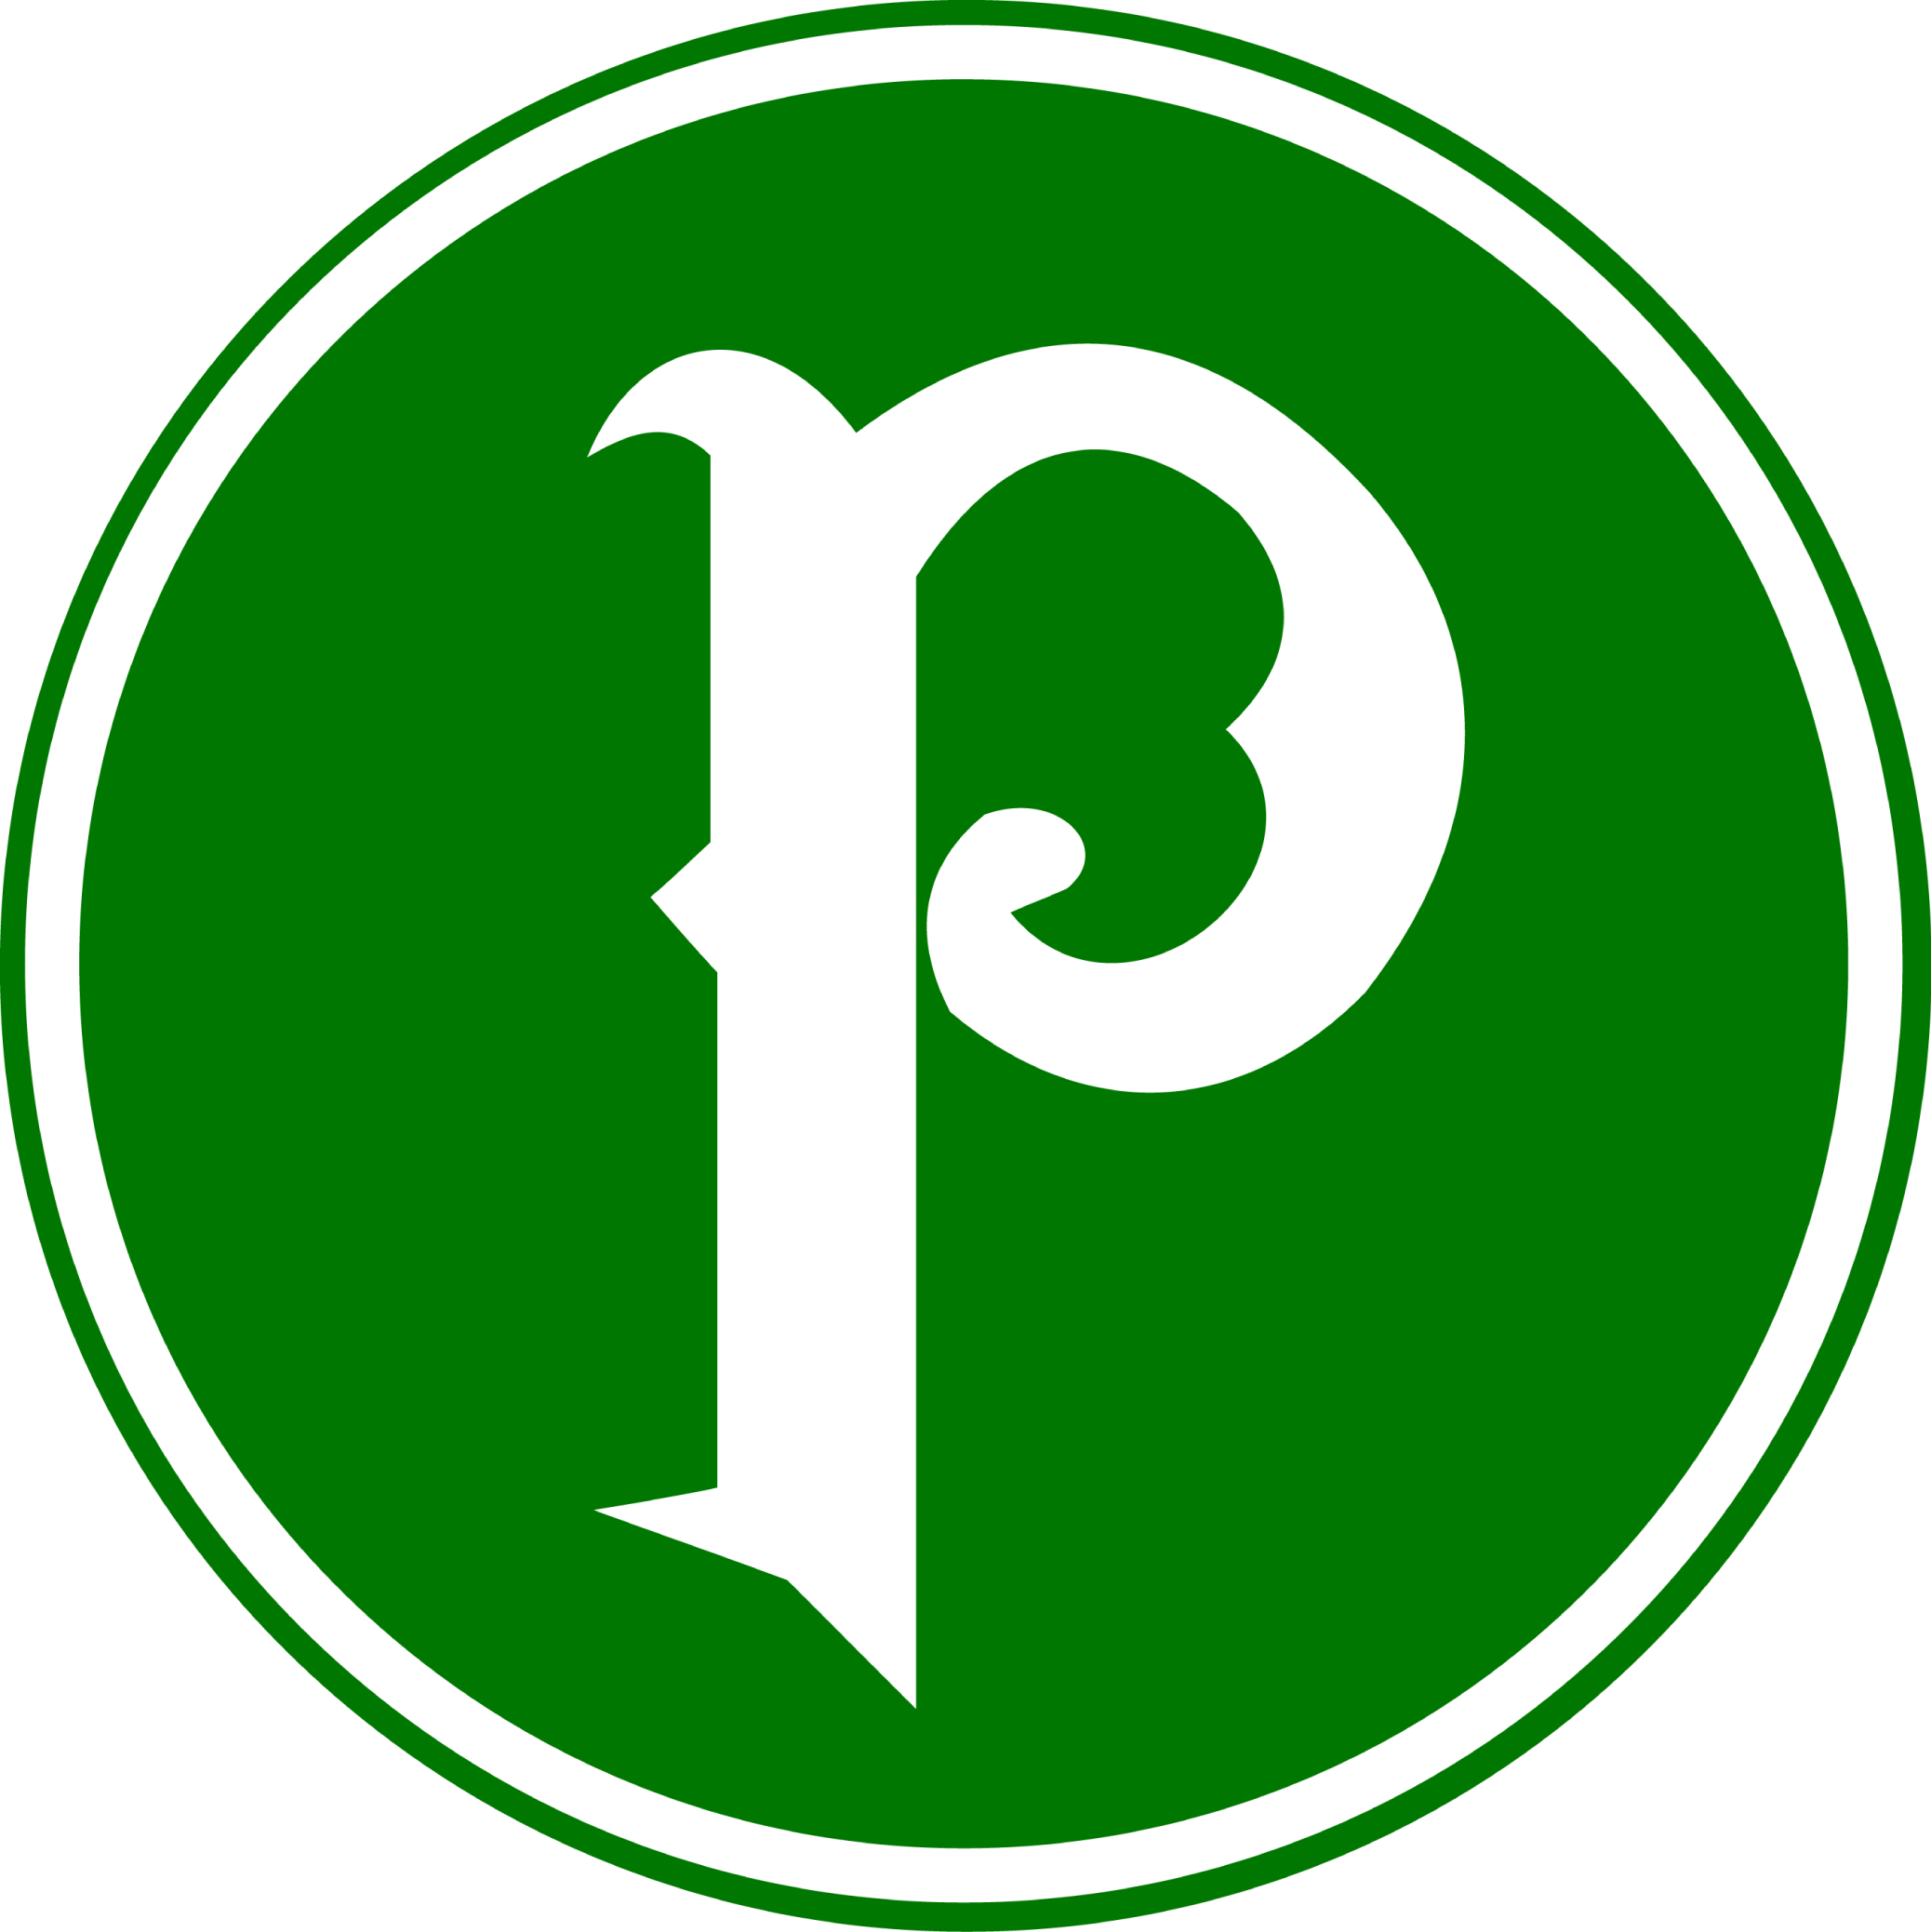 Imagens de logo do palmeiras png